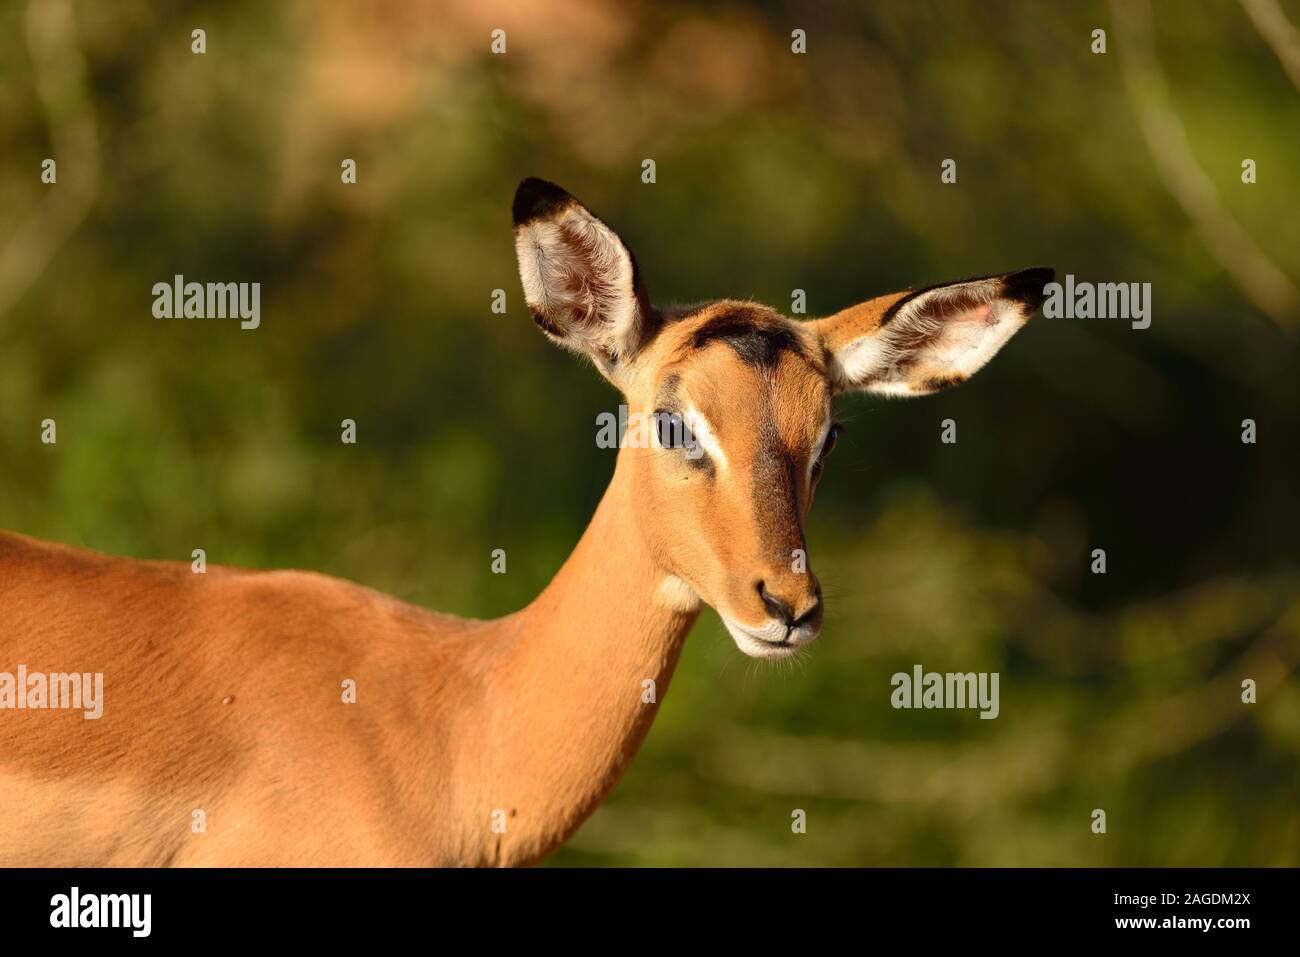 Selektive Fokusaufnahme eines schönen Hirsches, der in der aufgenommen wurde Afrikanischer Dschungel Stockfoto